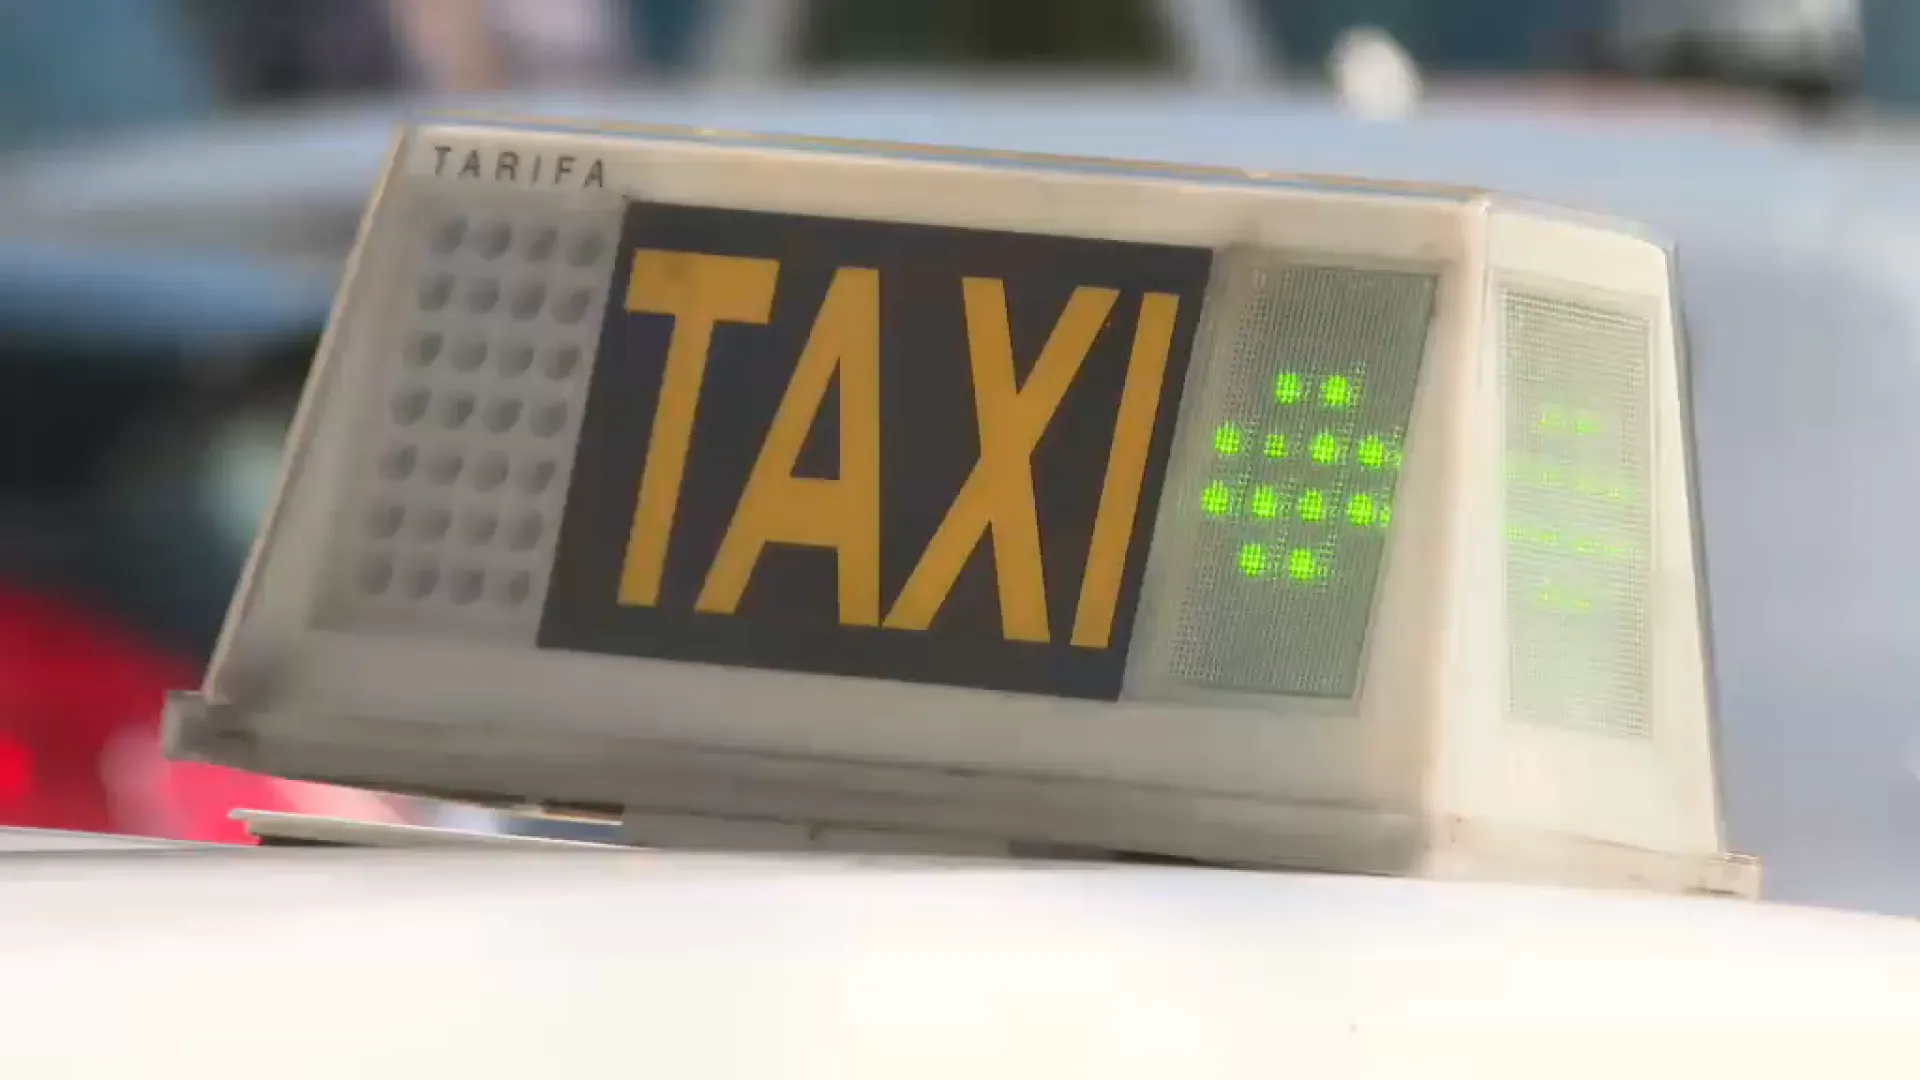 Els+taxis+de+Palma+poden+operar+les+24+hores+al+dia+fins+a+l%E2%80%99octubre